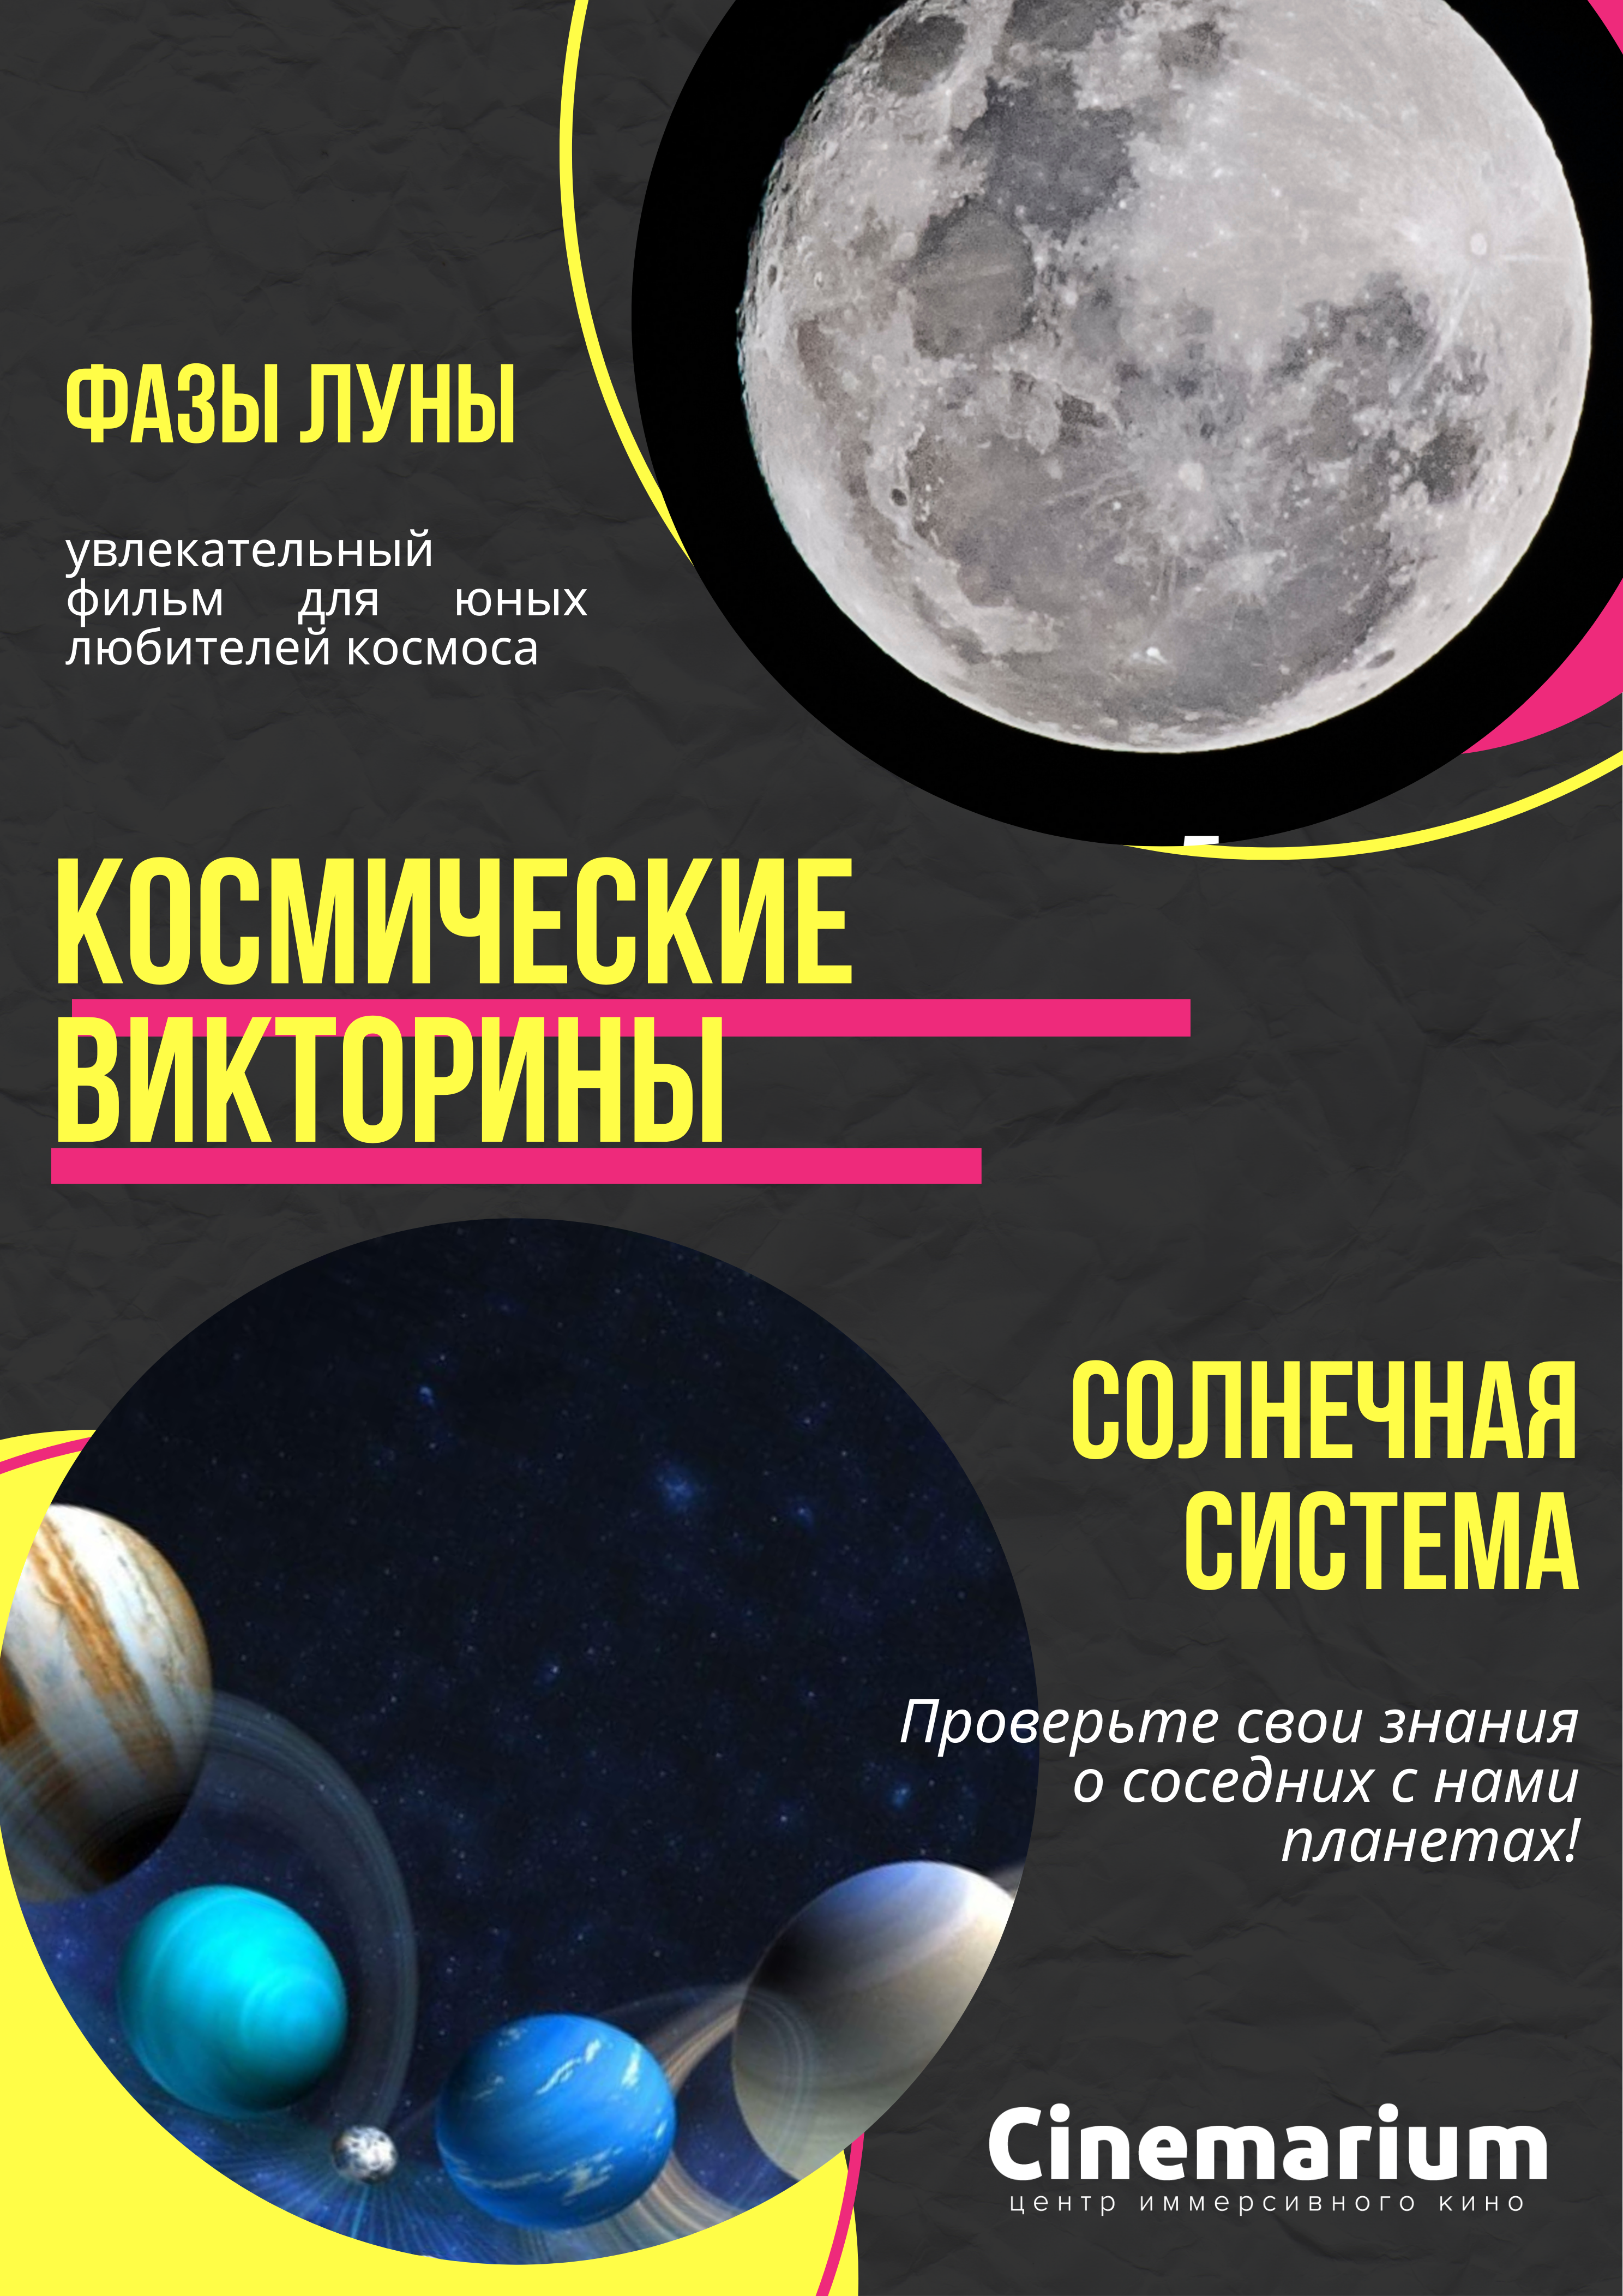 Фото - постер к Кино 2 фильма подряд! Космические викторины «Солнечная Система» и «Фазы Луны» на kudapoiti.by